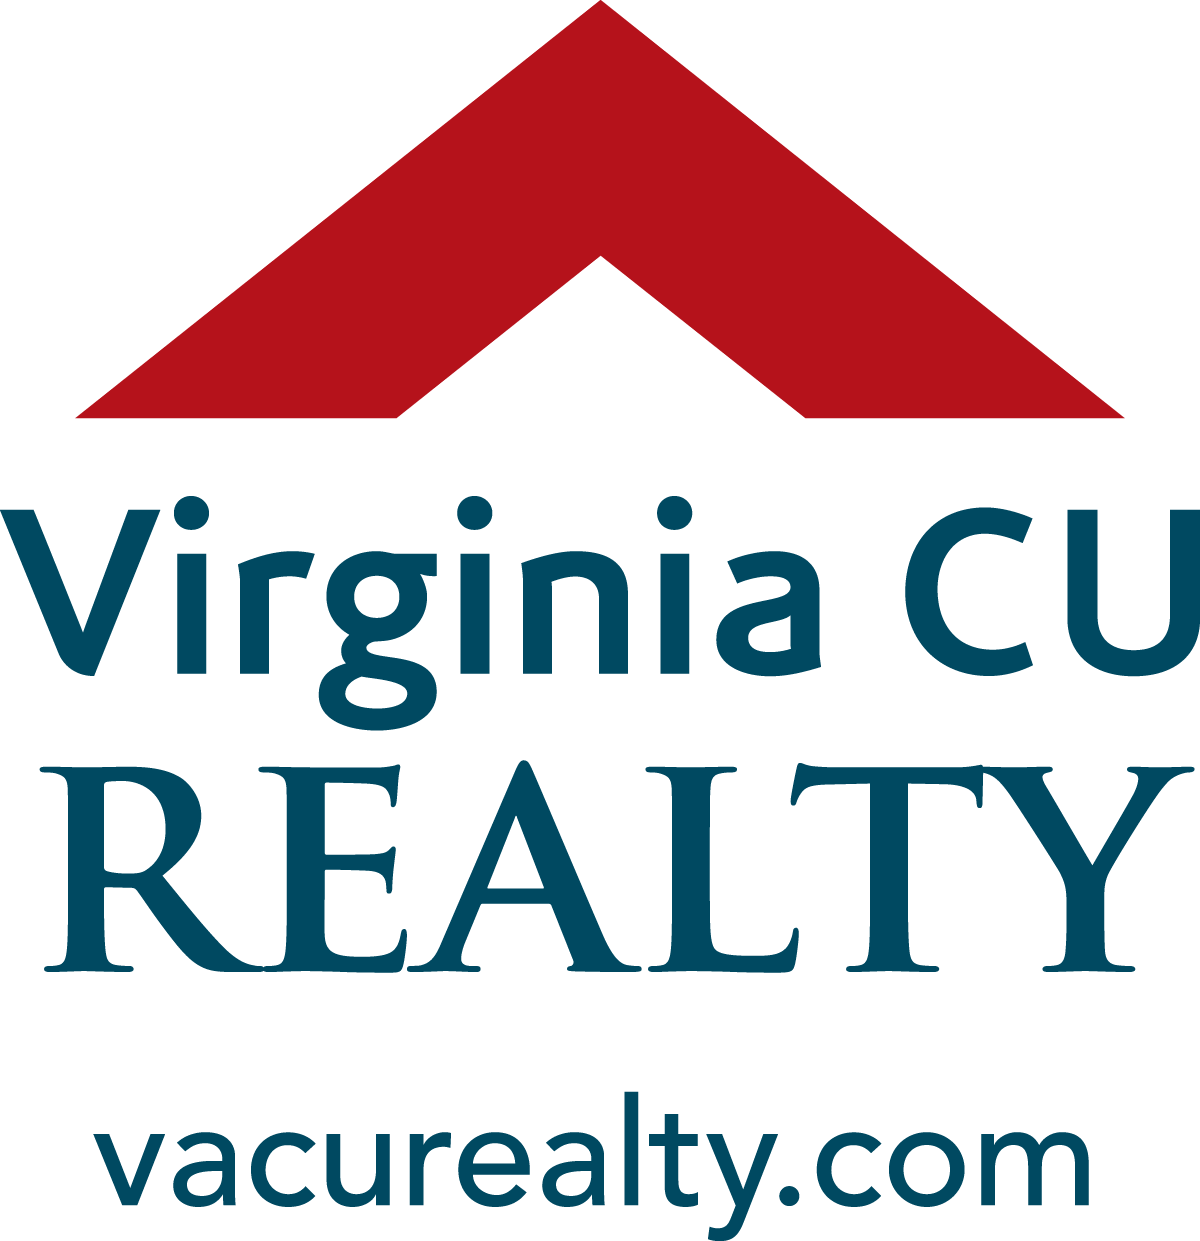 Virginia CU Realty